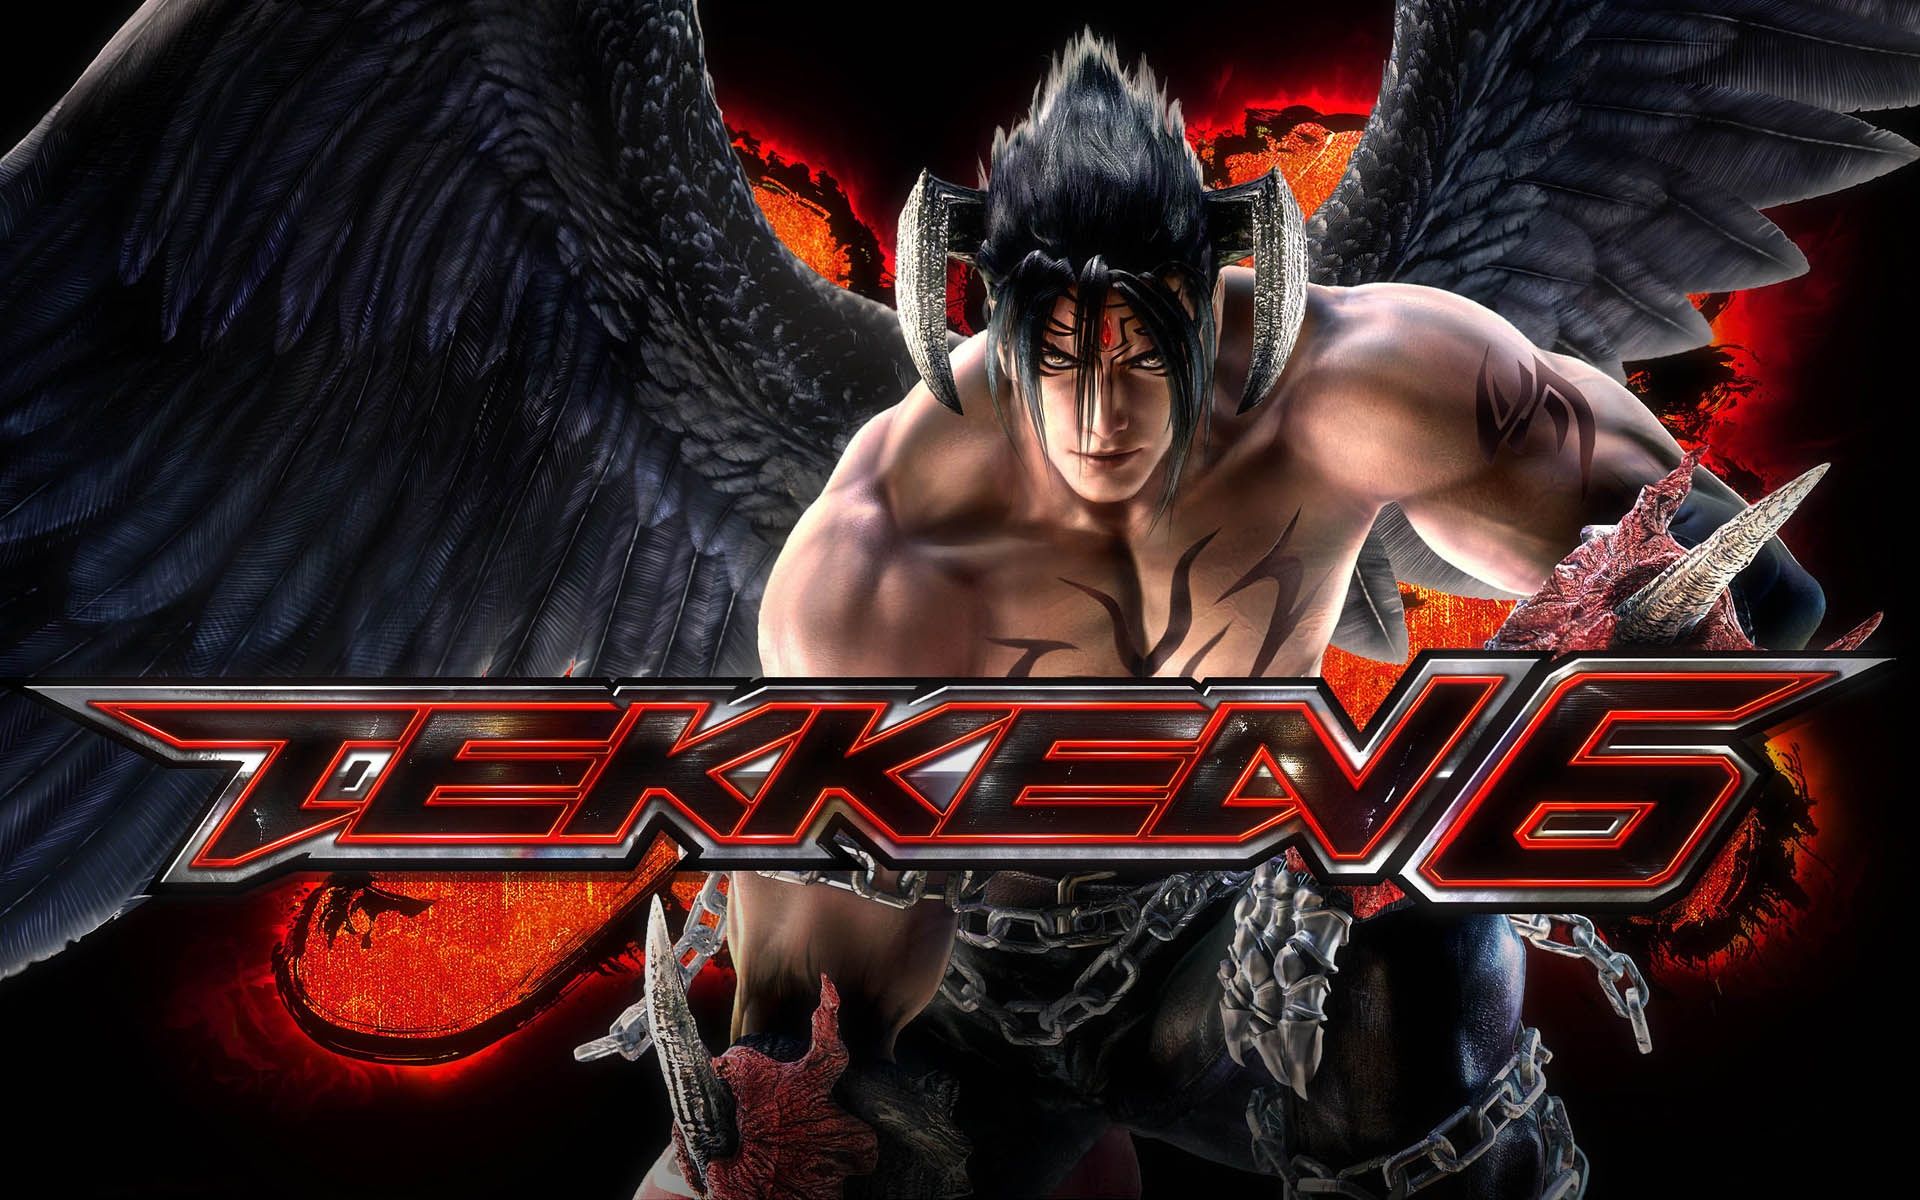 Devil Jin Tekken 6 Wallpaper in jpg format for free download